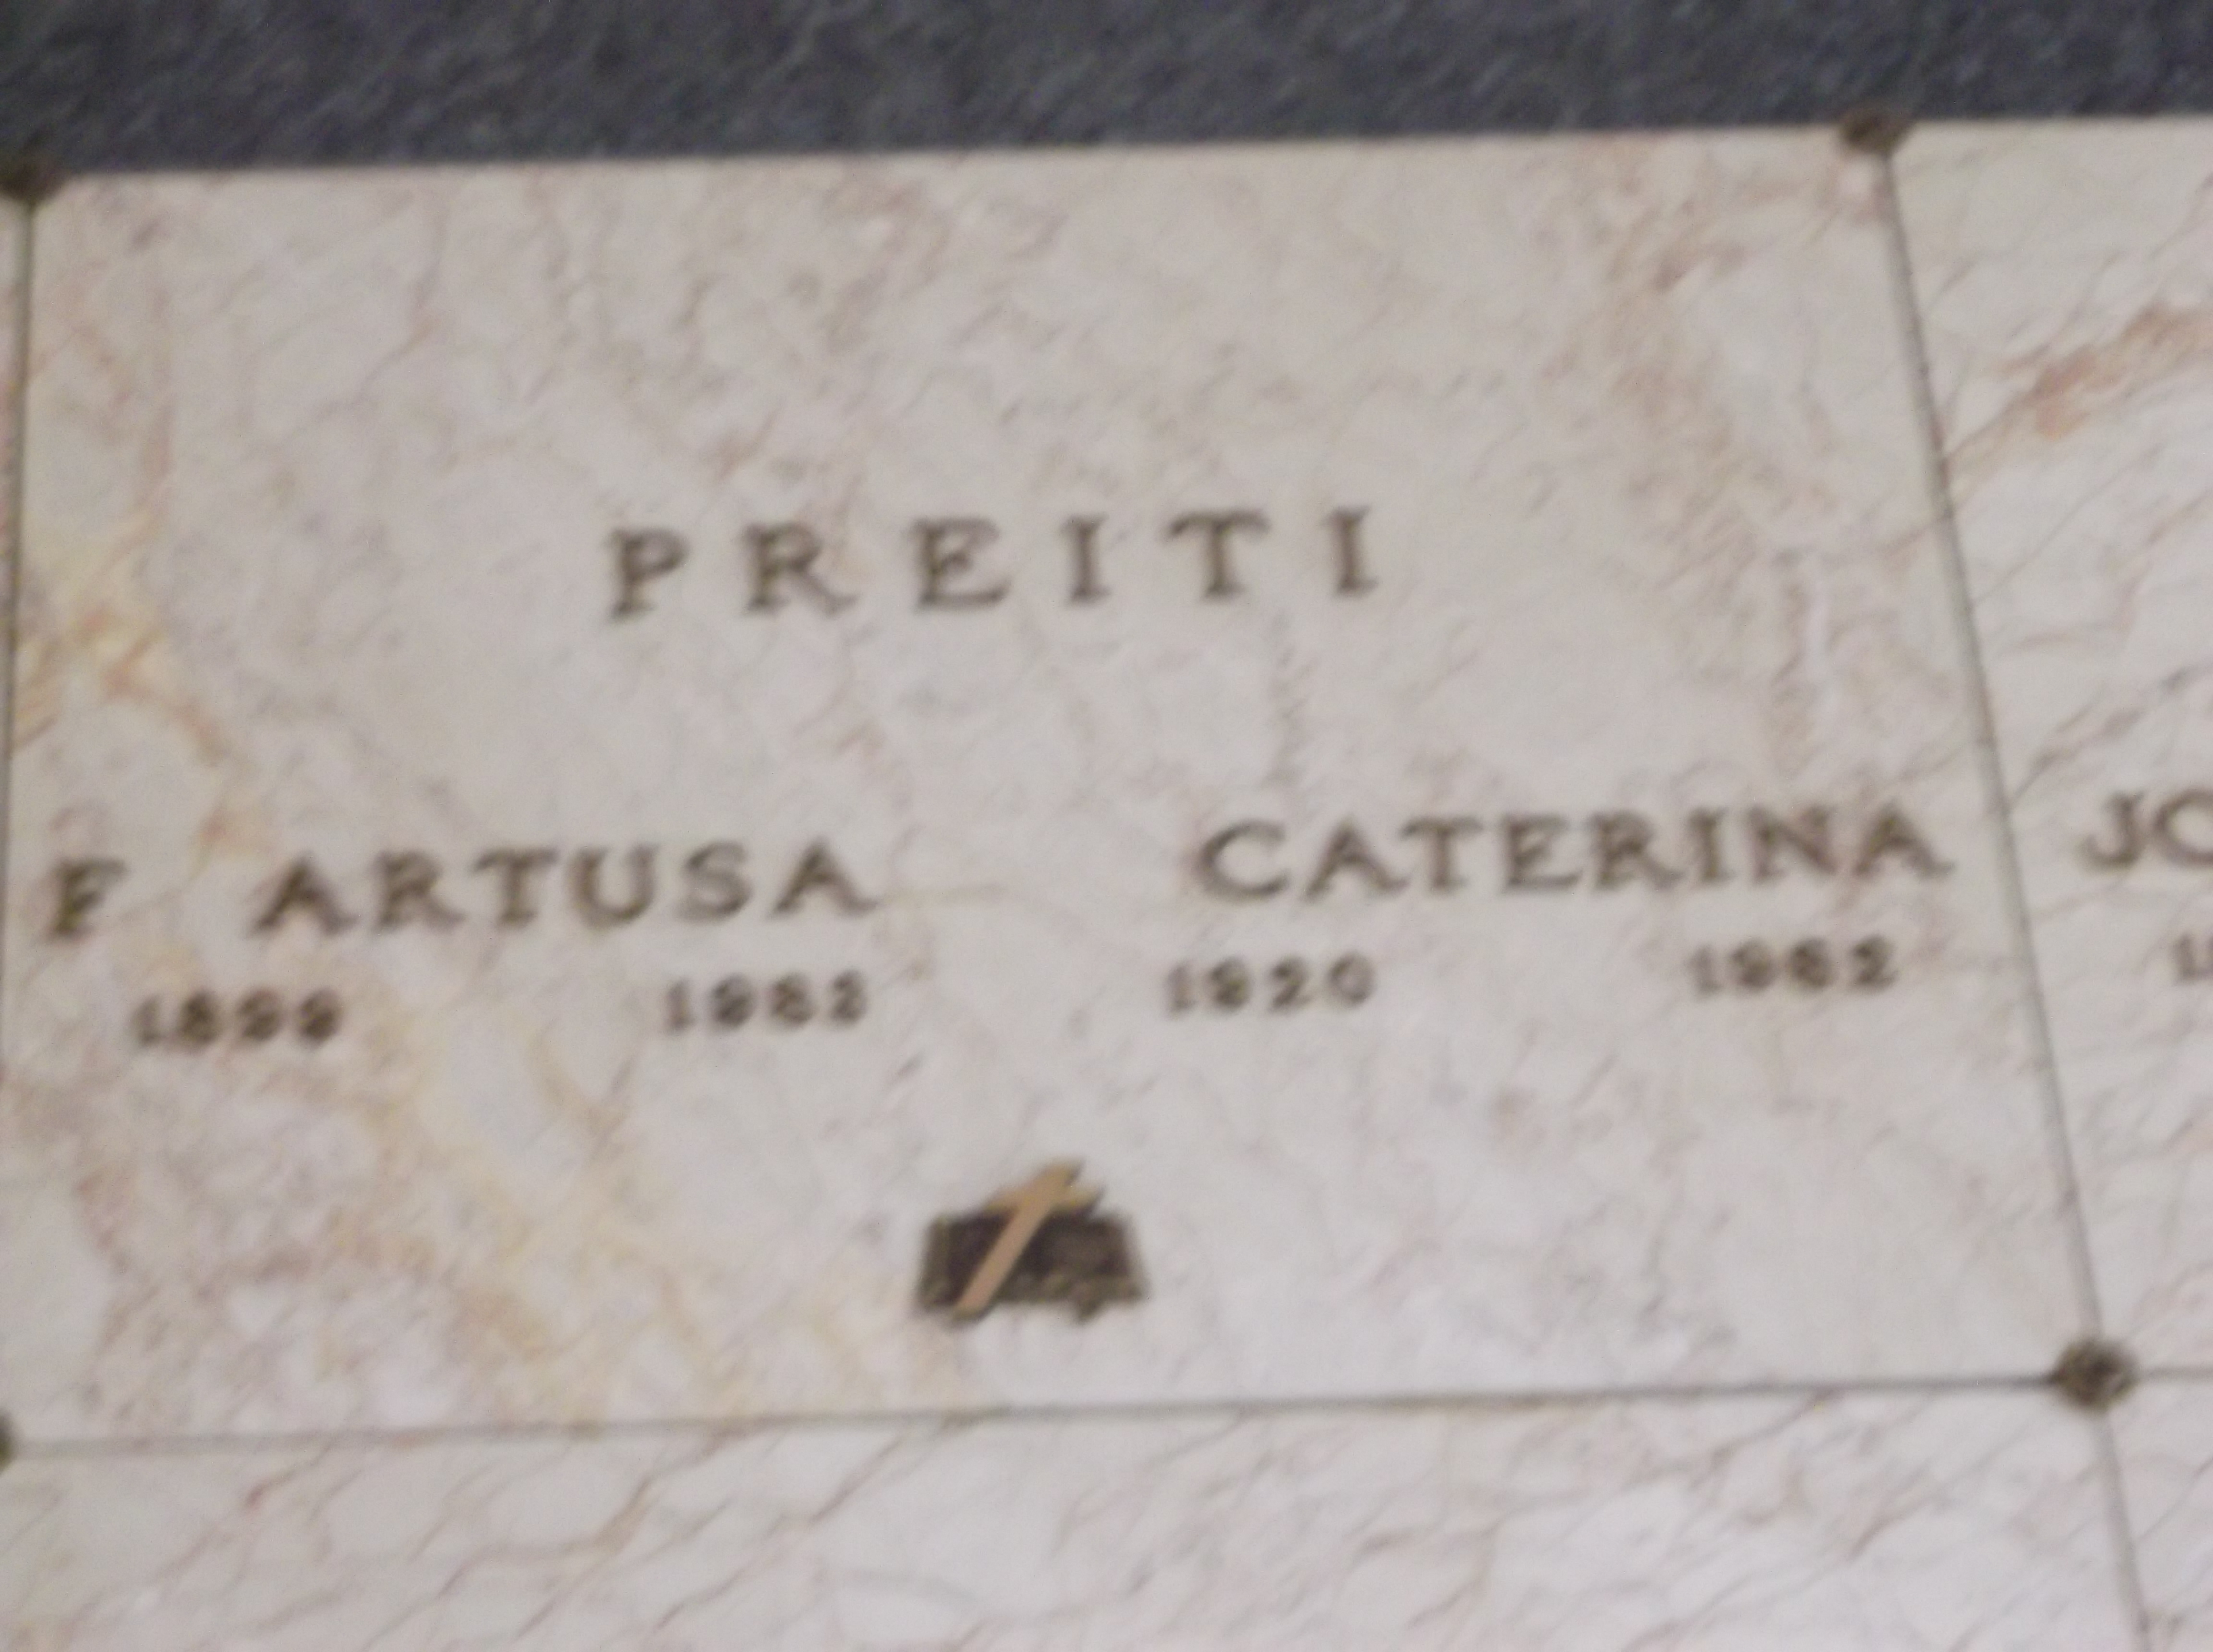 Caterina Preiti